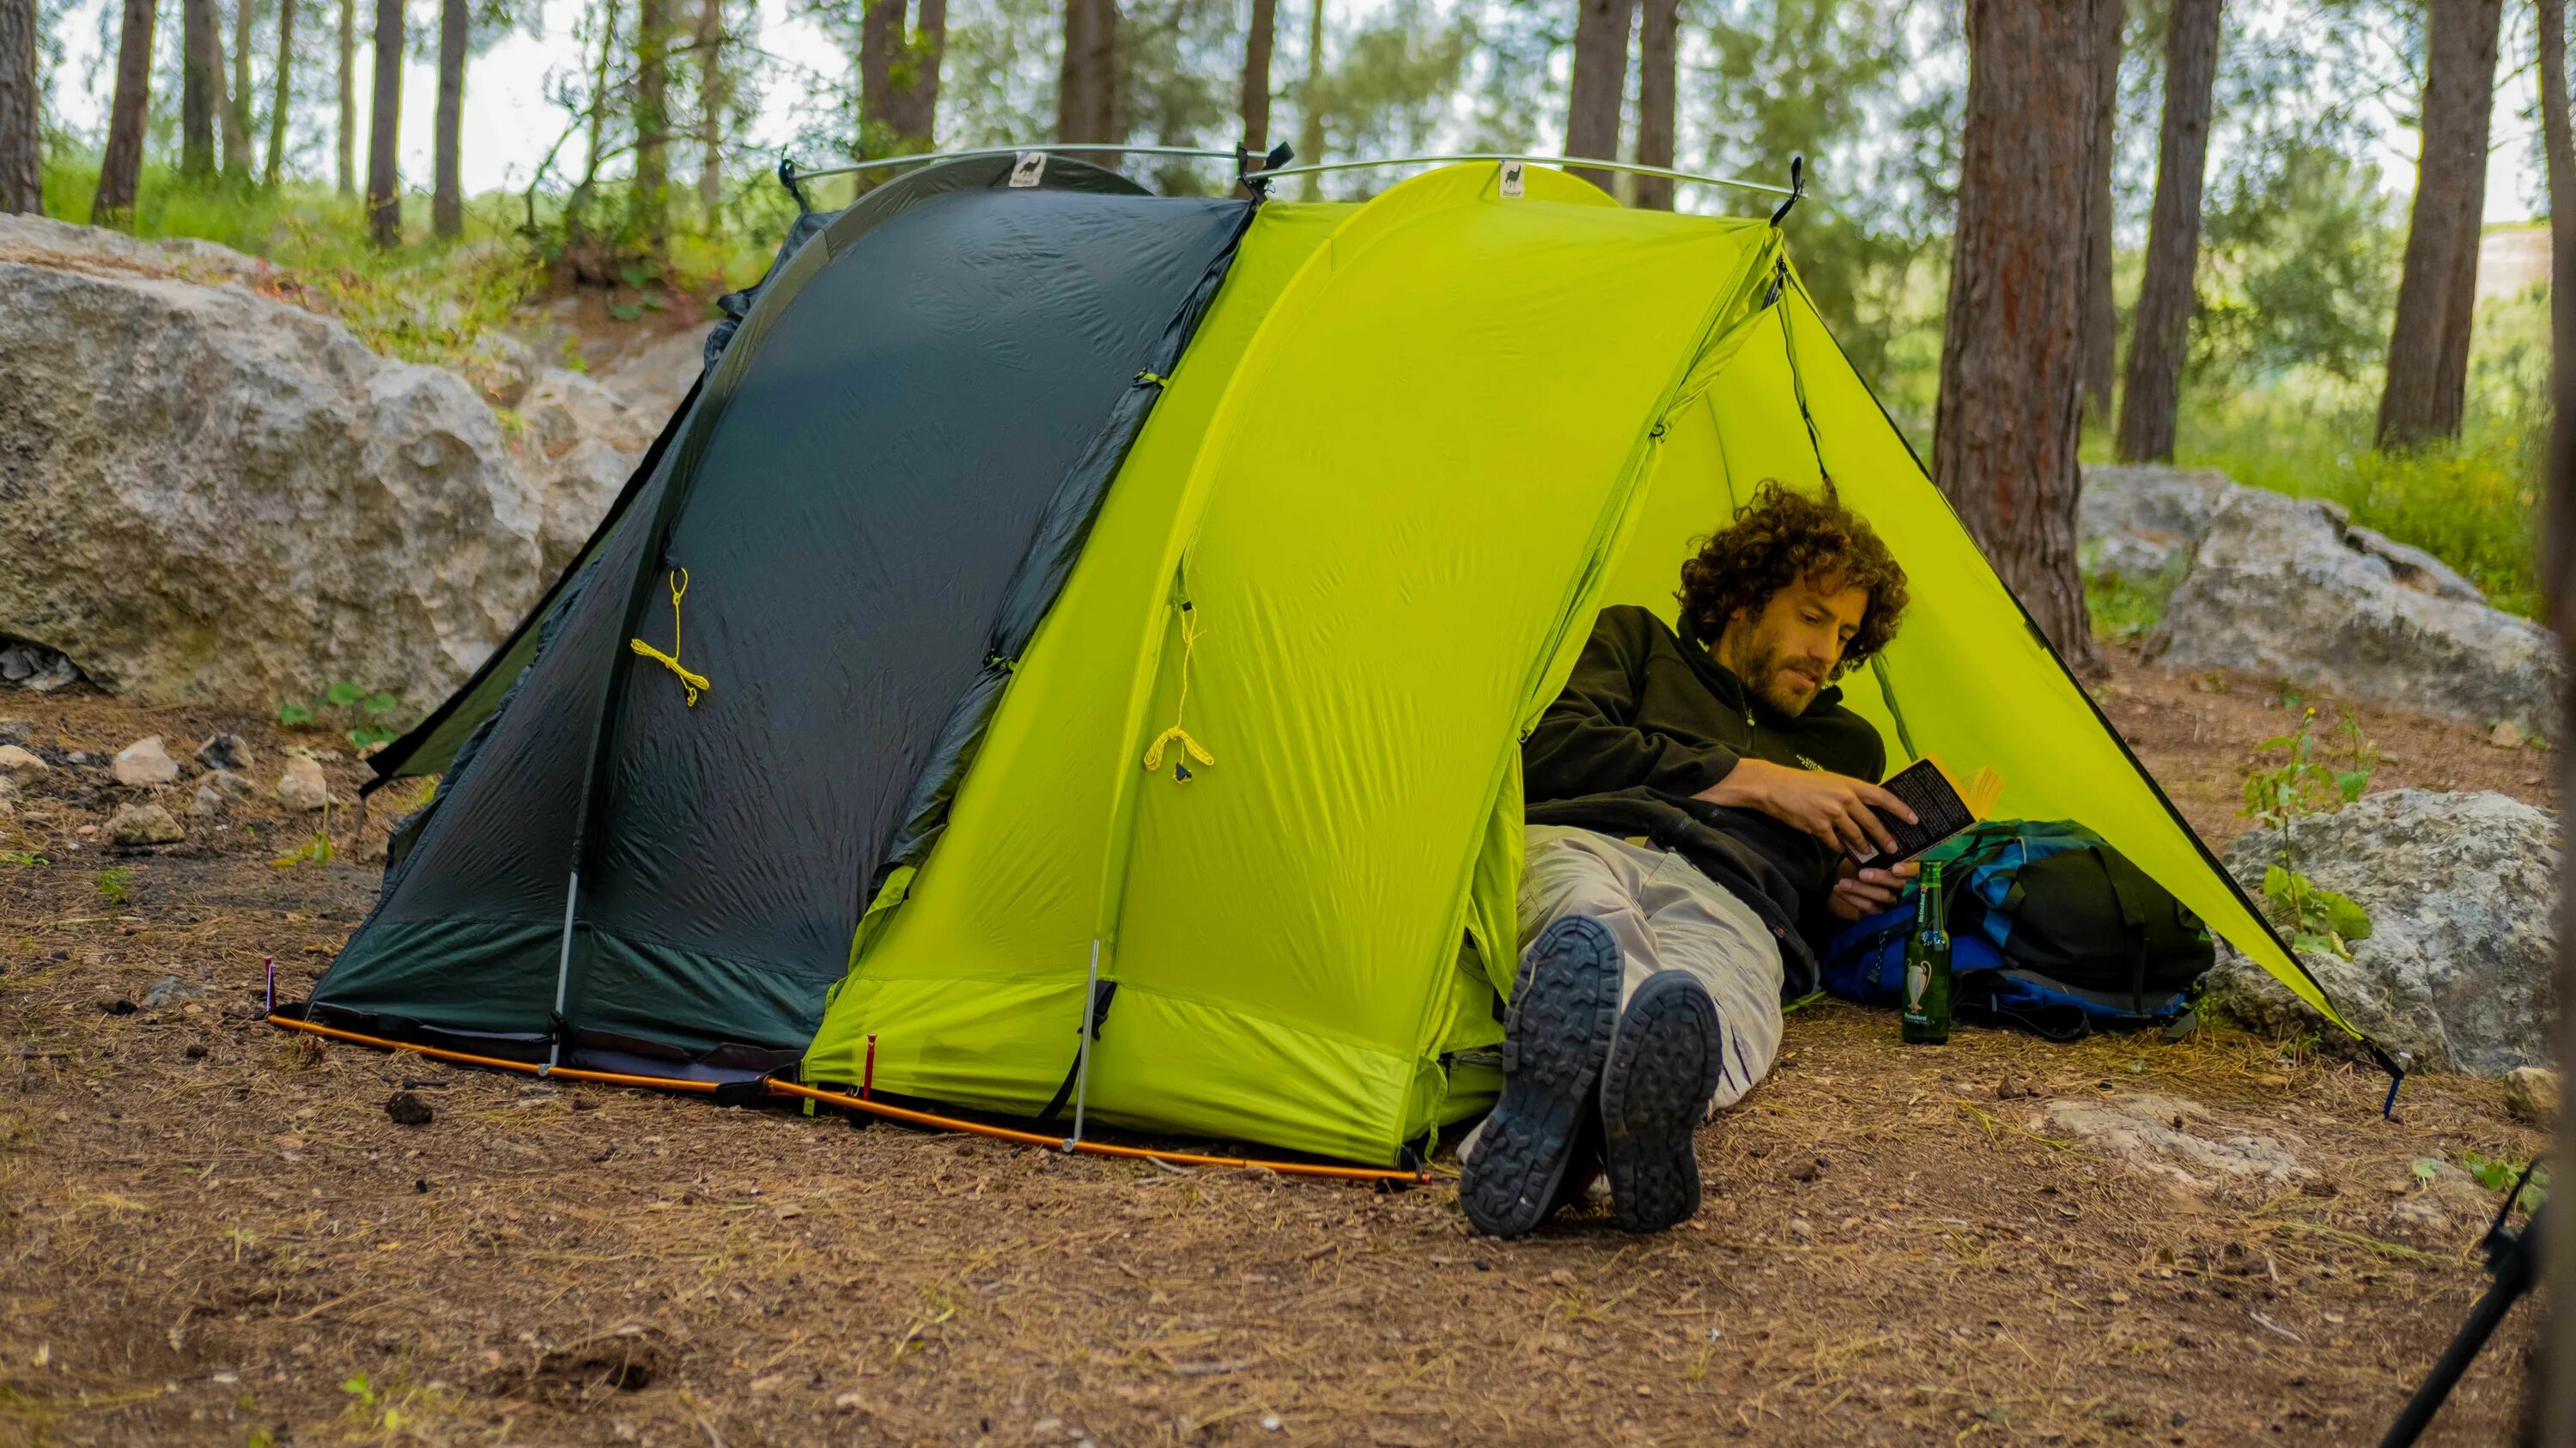 Ночевка 2015. “Modular Tent System” палатки. Спать в палатке. Палатки для кемпинга. Ночевка в палатке.